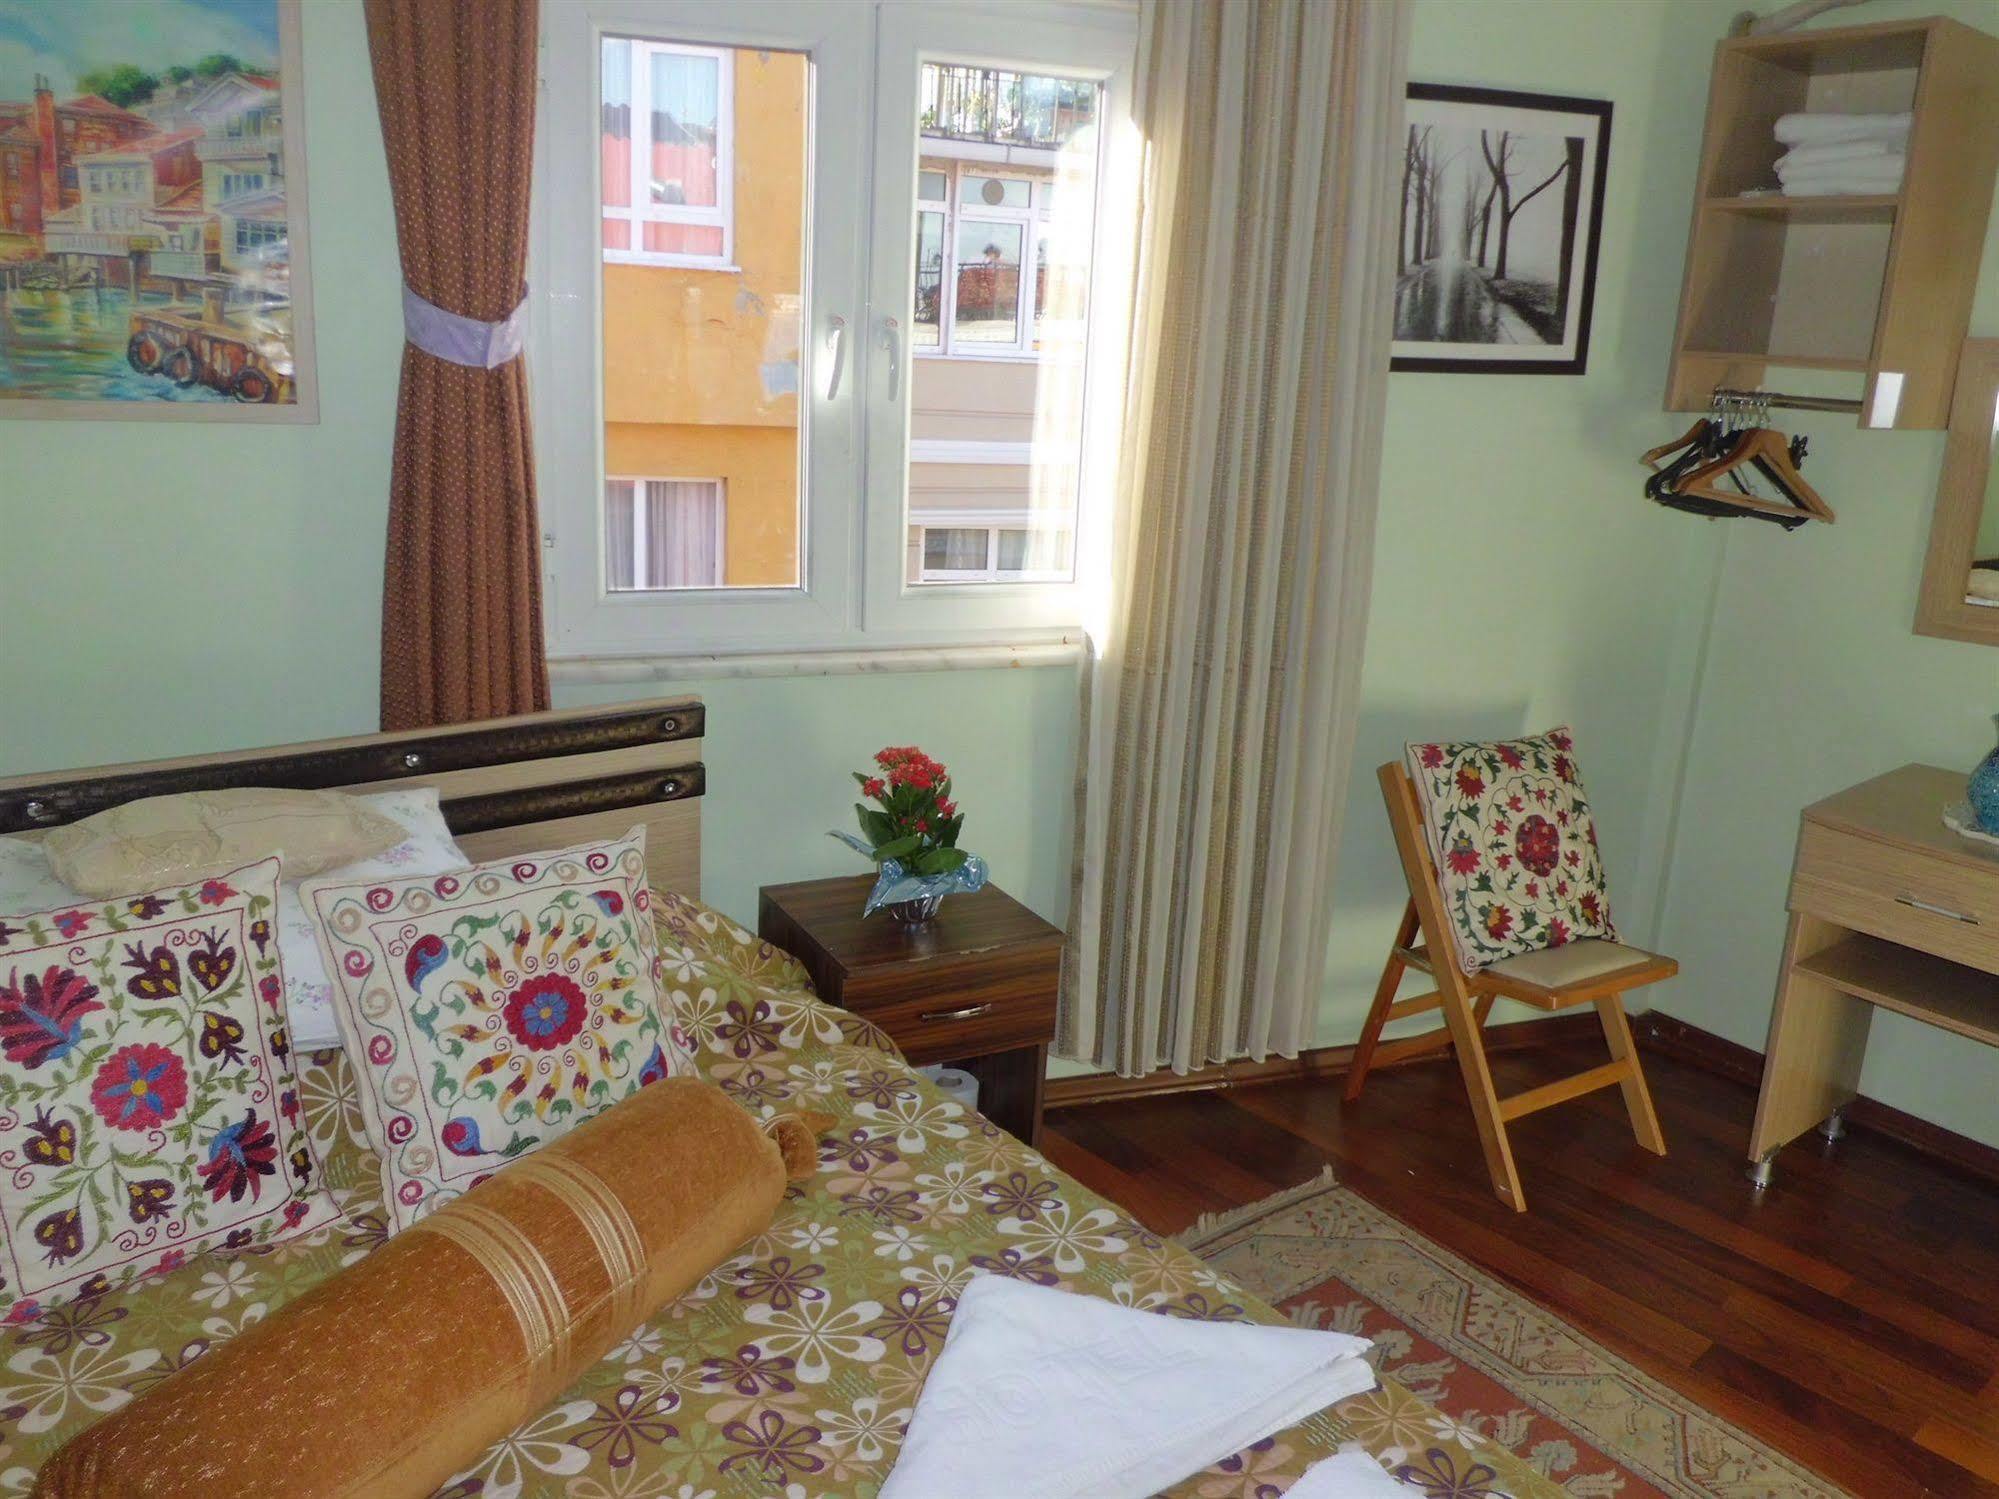 Chora Guesthouse Istanbul Ngoại thất bức ảnh